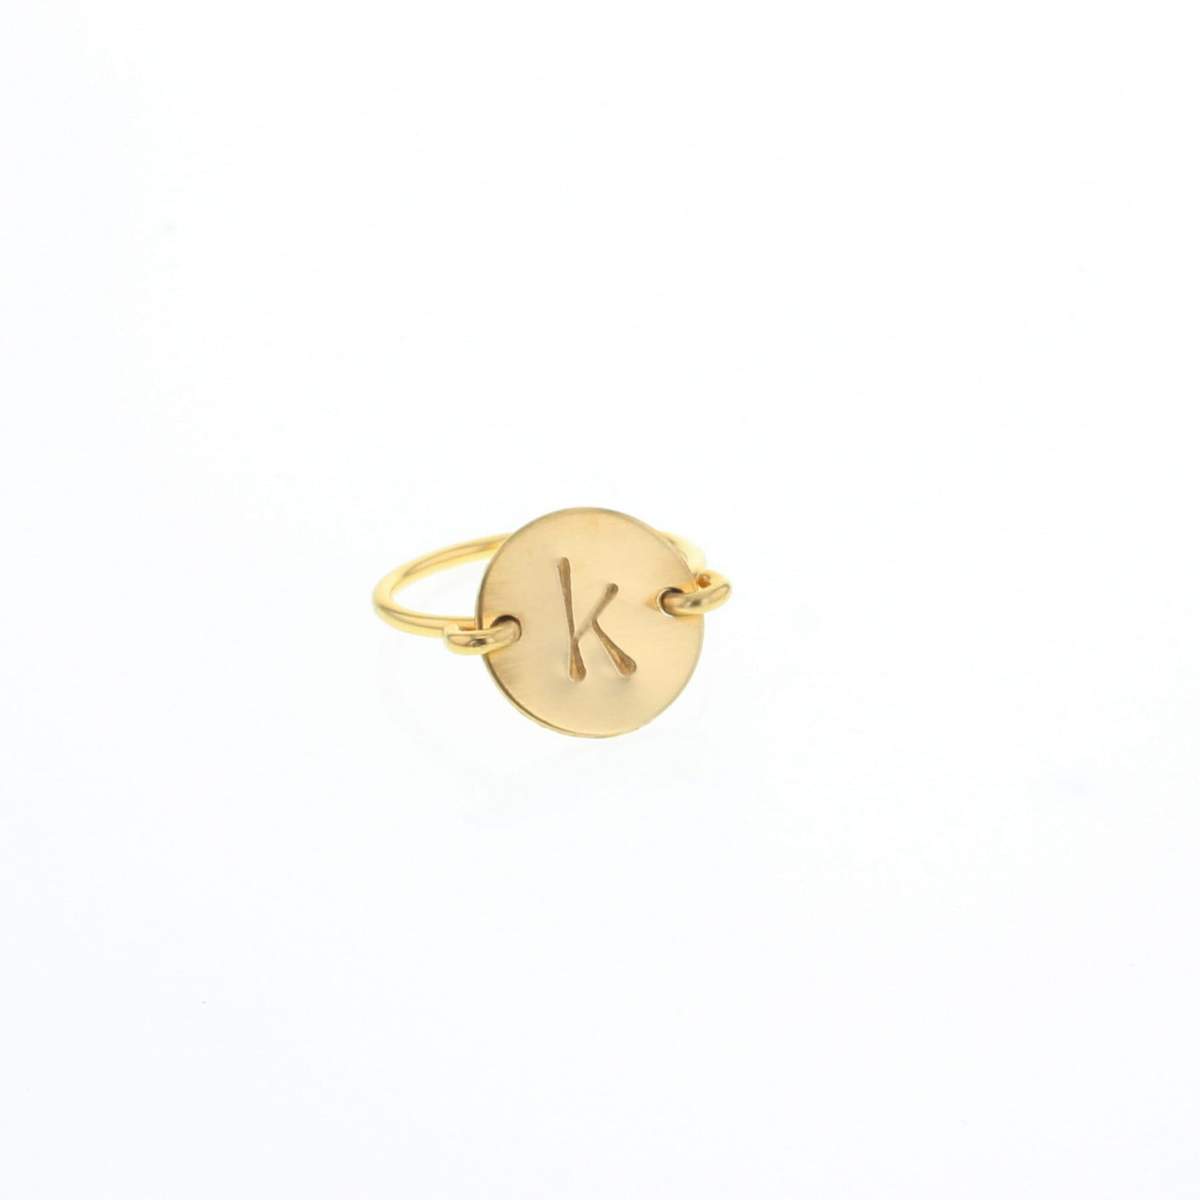 Modernist Initial Ring 'K' – S/H KOH